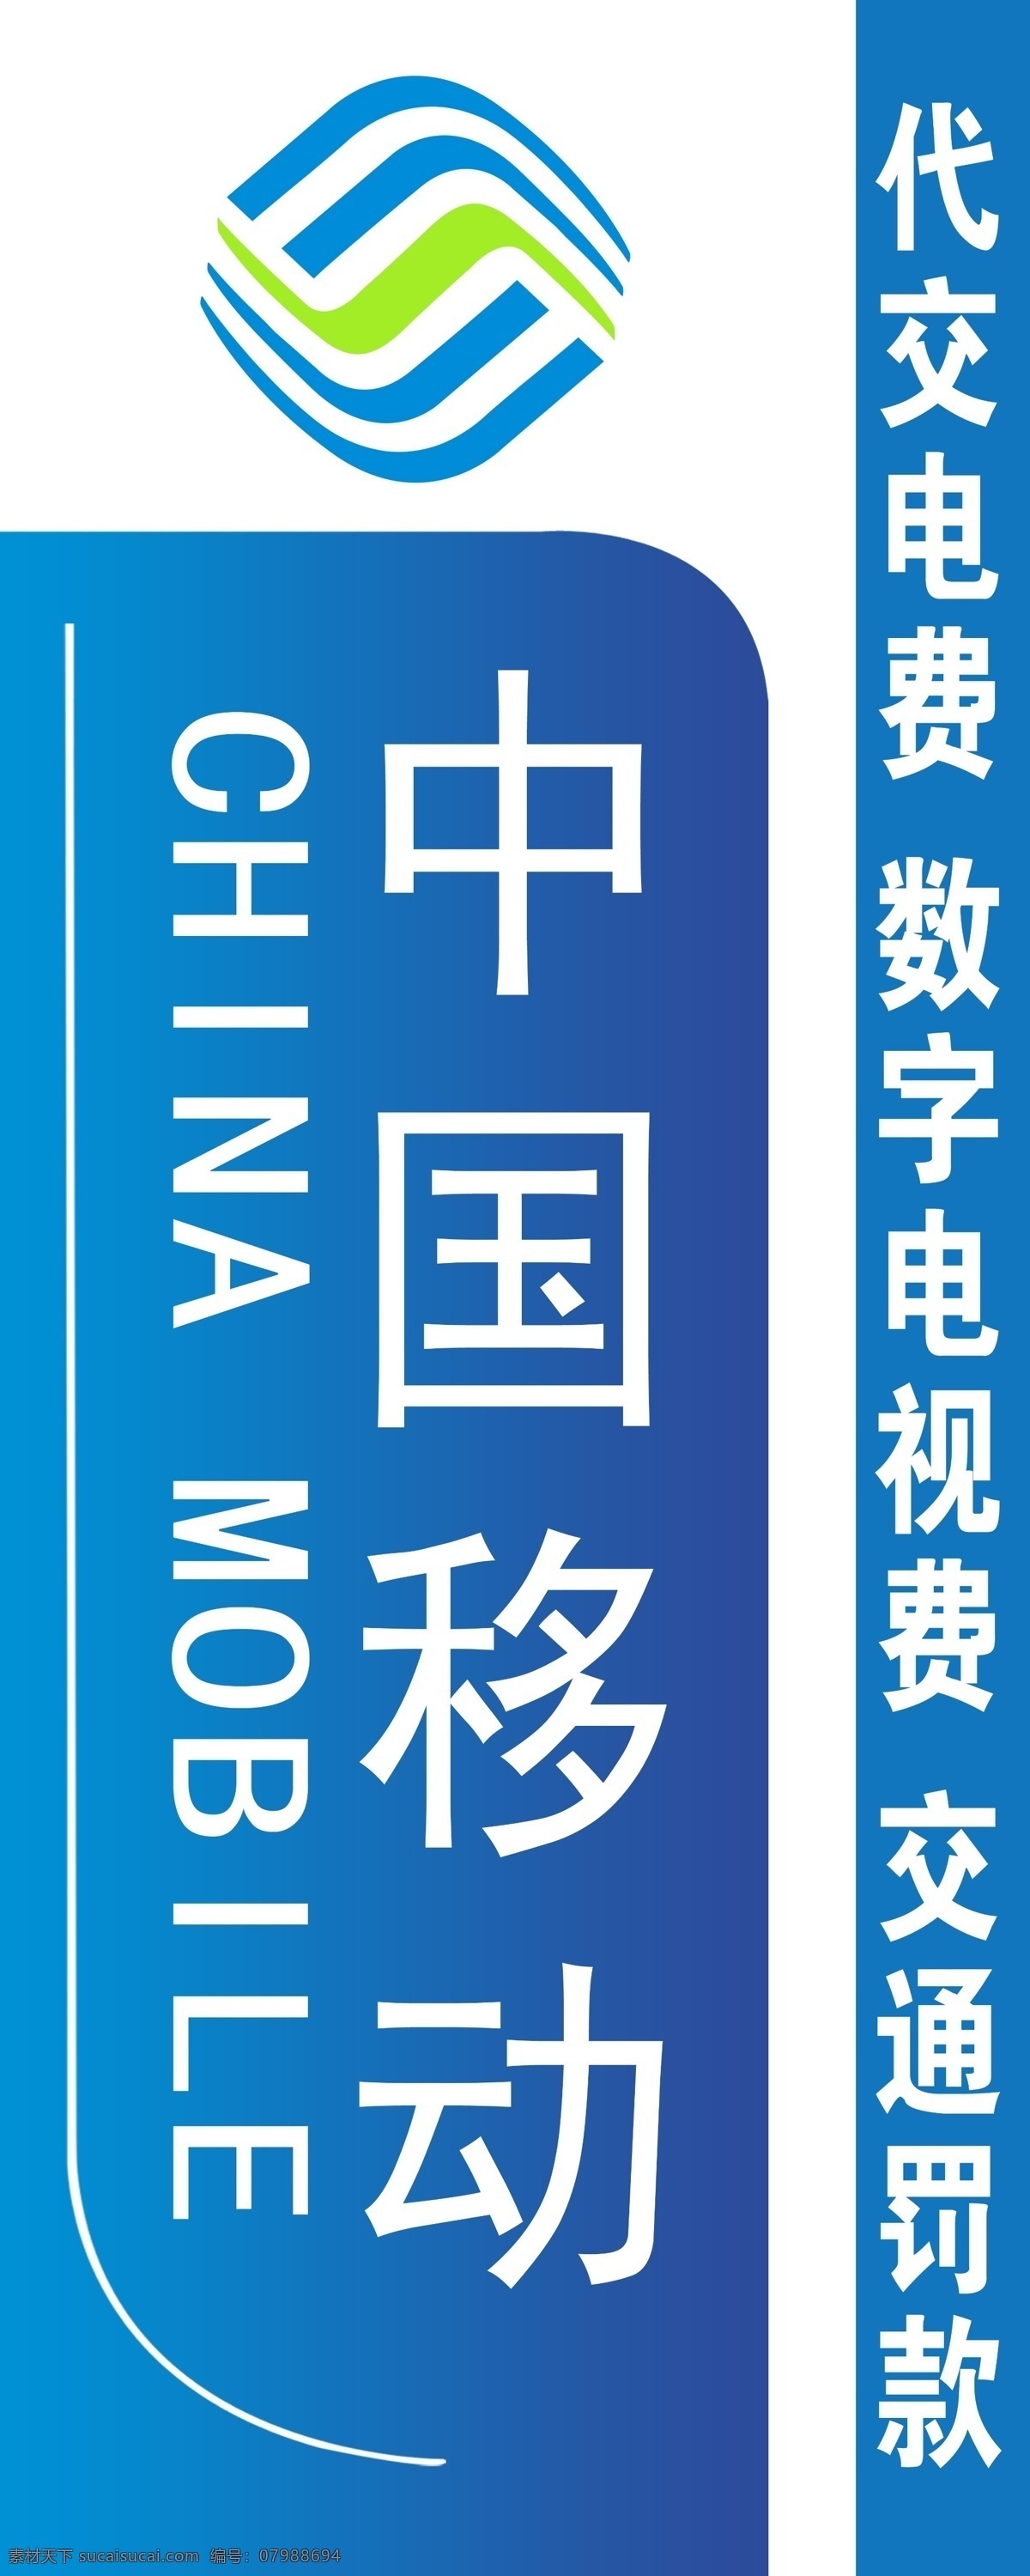 通天雨营业厅 中国移动 竖牌 移动logo 英文 蓝白相渐 分层